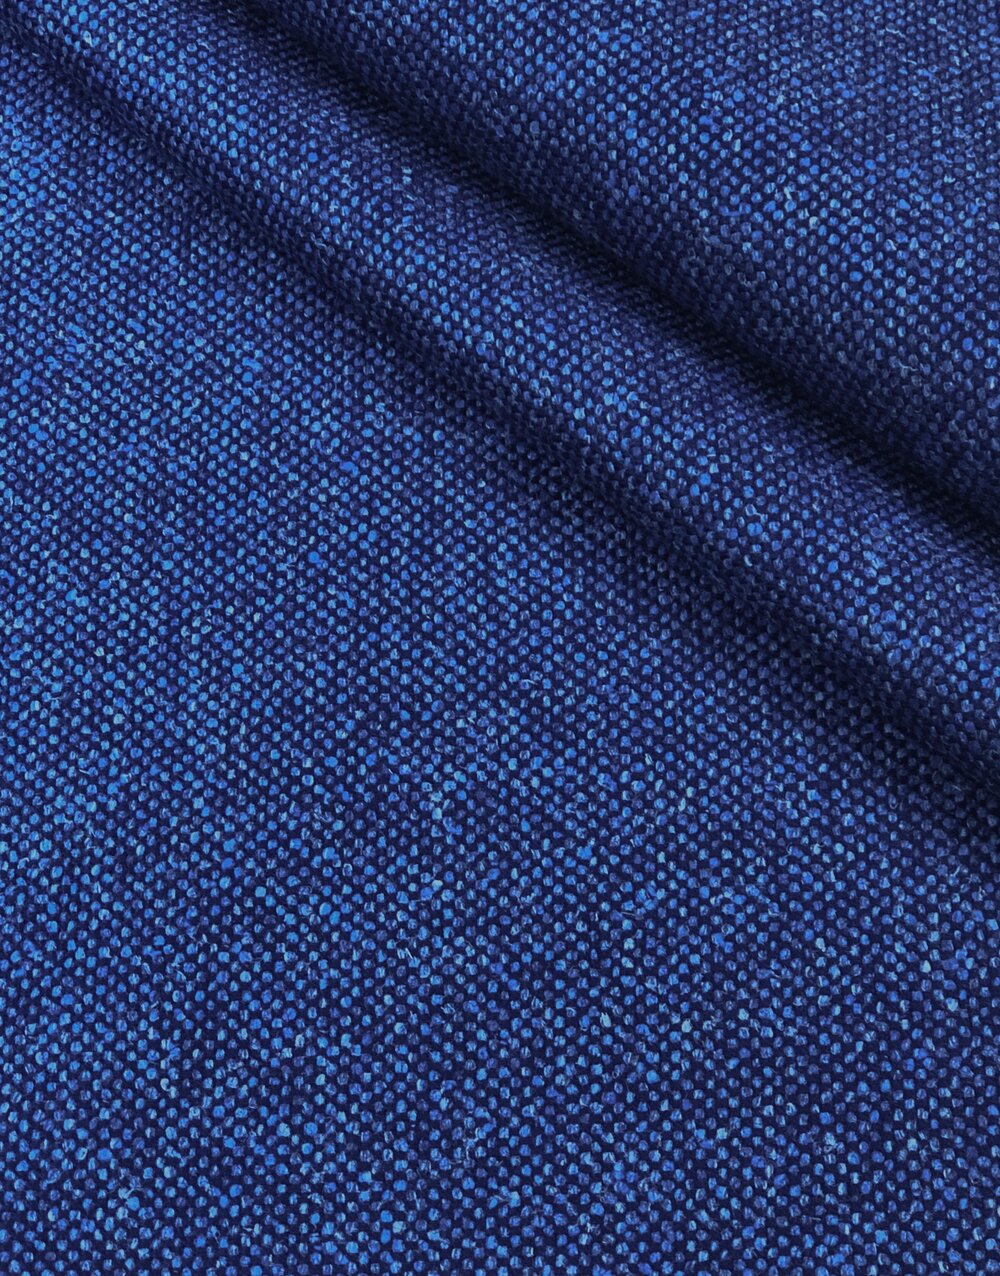 Royal Blue Wool Cloth -Remnants- $22.00 yd.